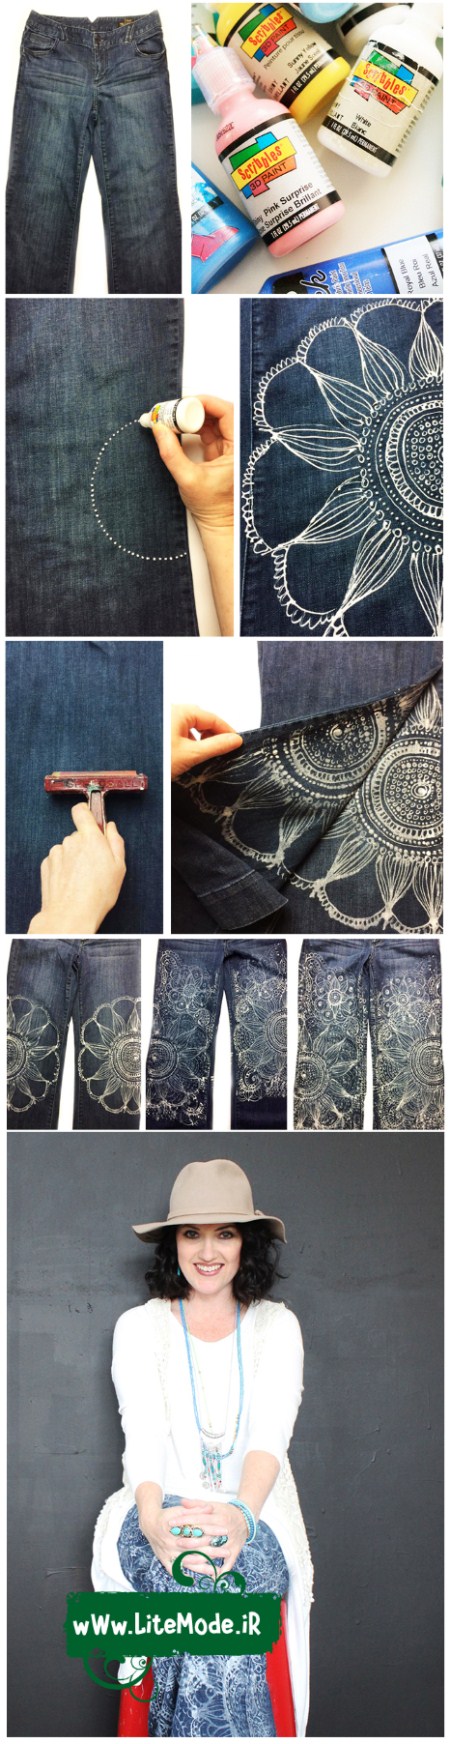 آموزش رنگ آمیزی روی شلوار جین ساده